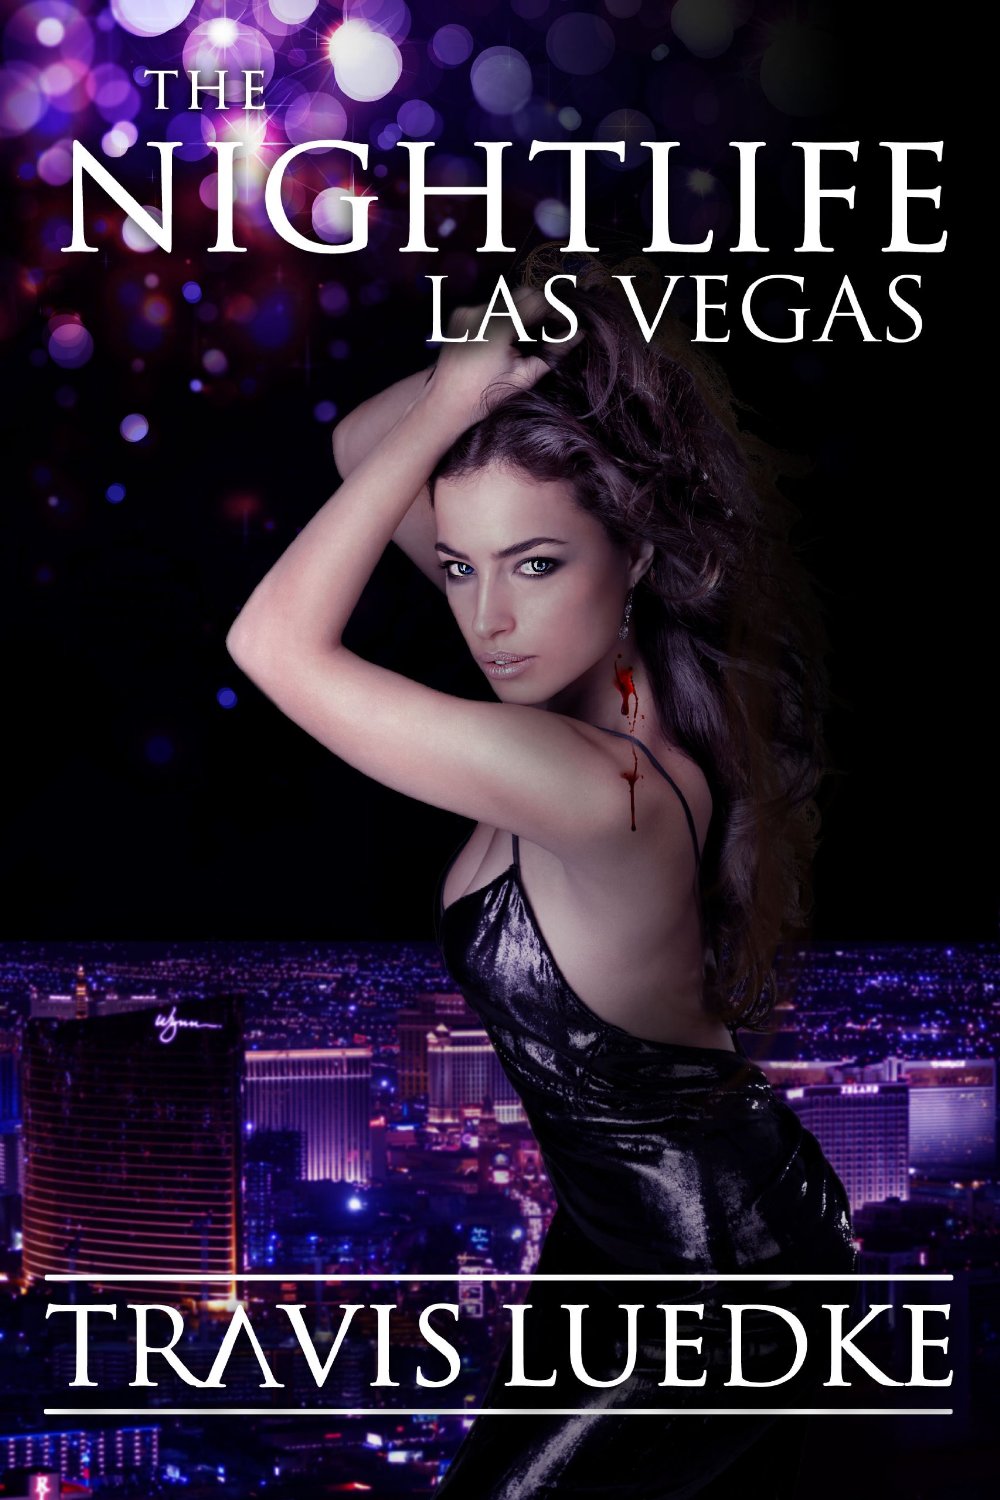 The Nightlife Las Vegas by Travis Luedke